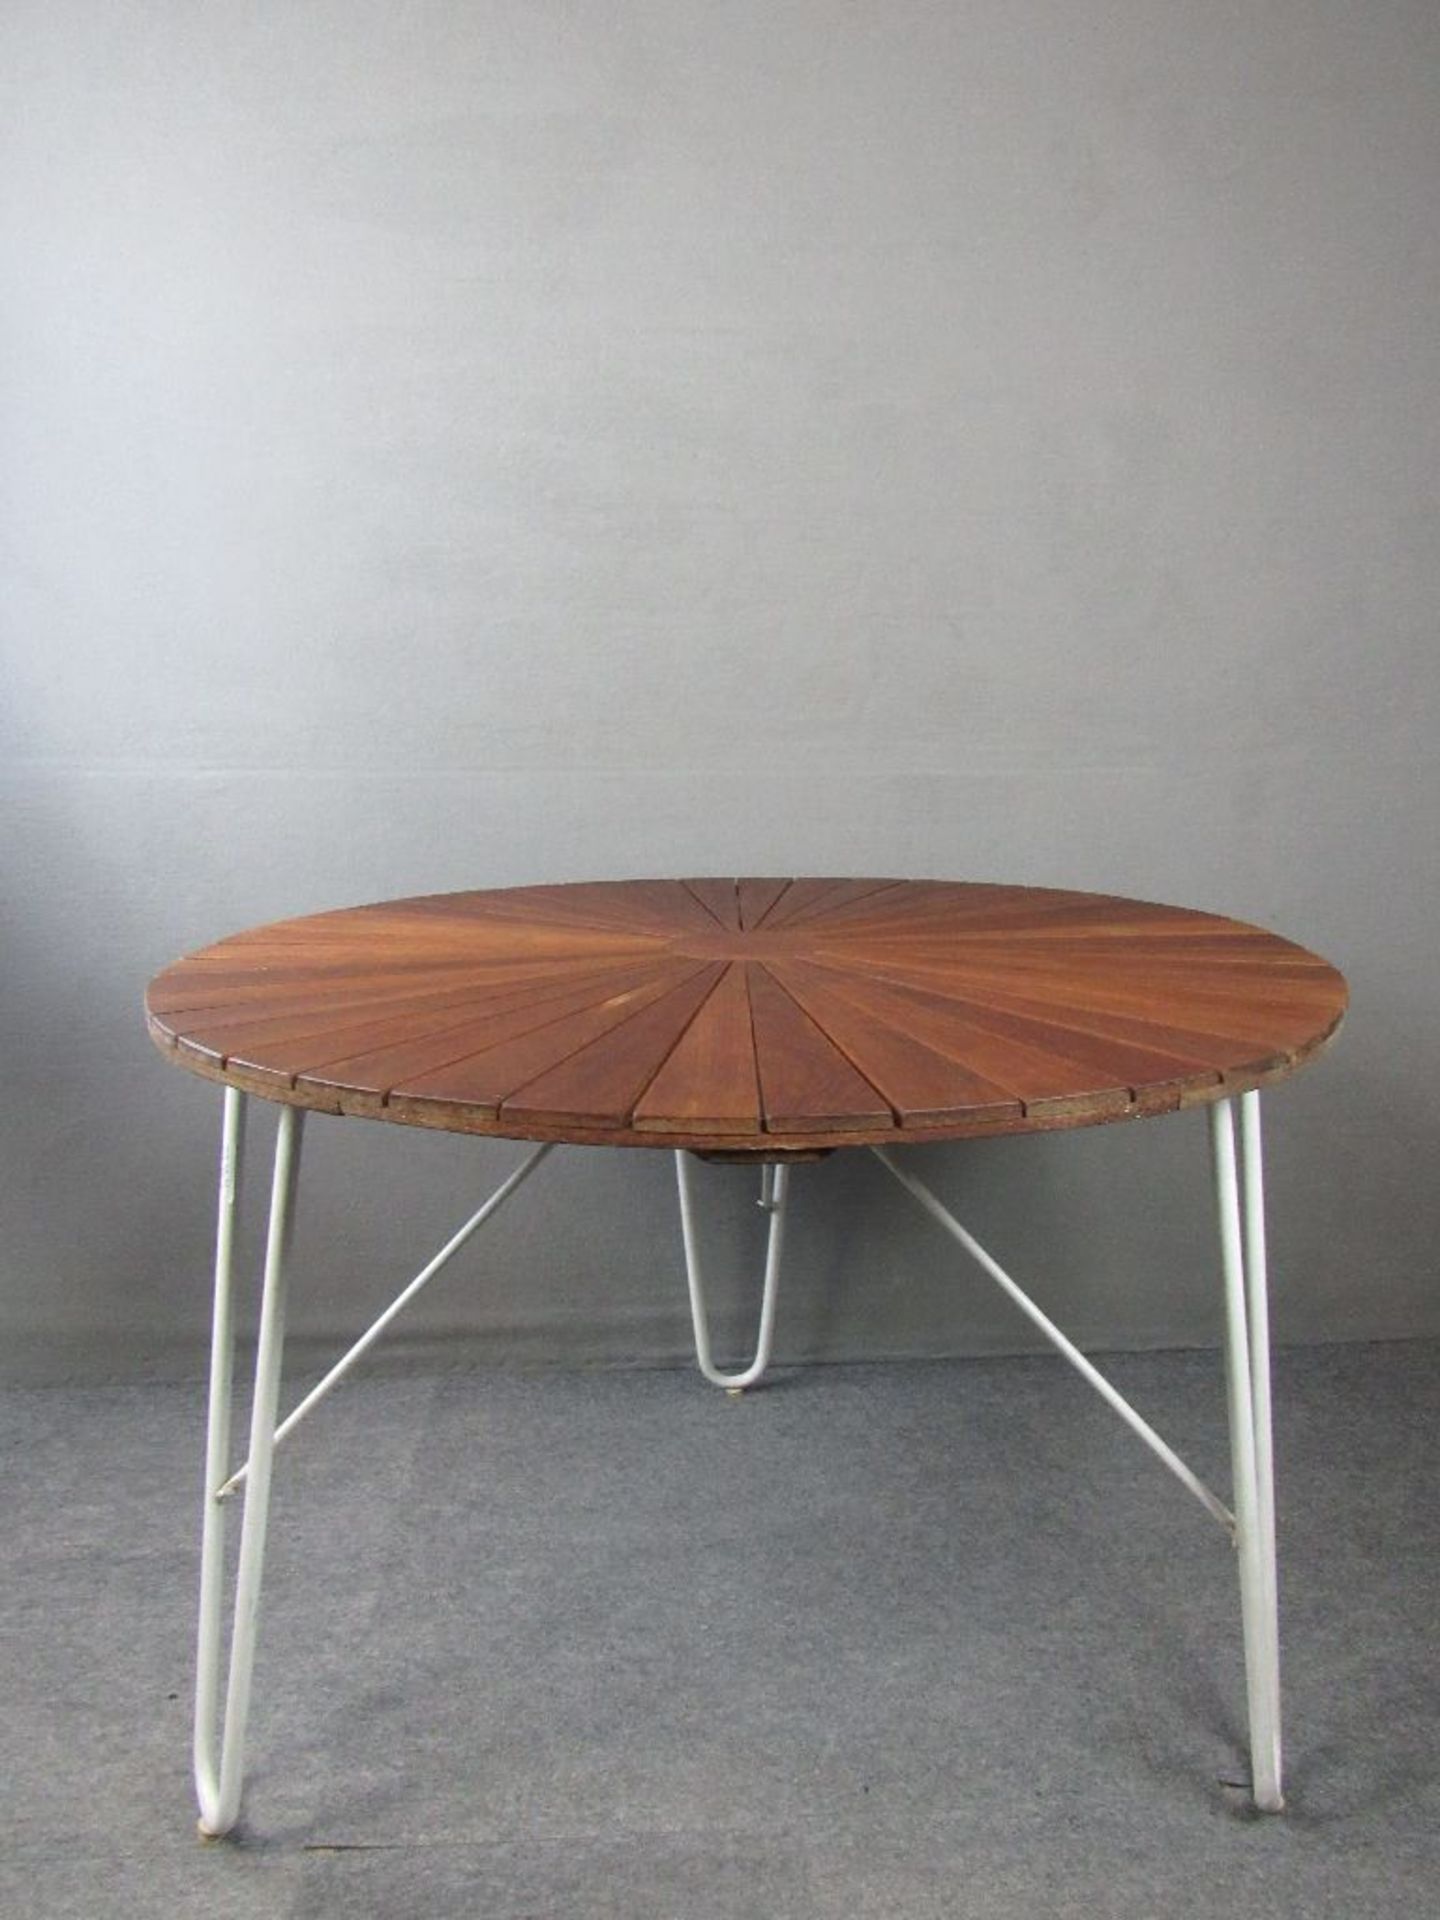 Danish Design Tisch Teakplatte auf drei Schlaufenbeinen diese abnehmbar Modell Madalay Made in